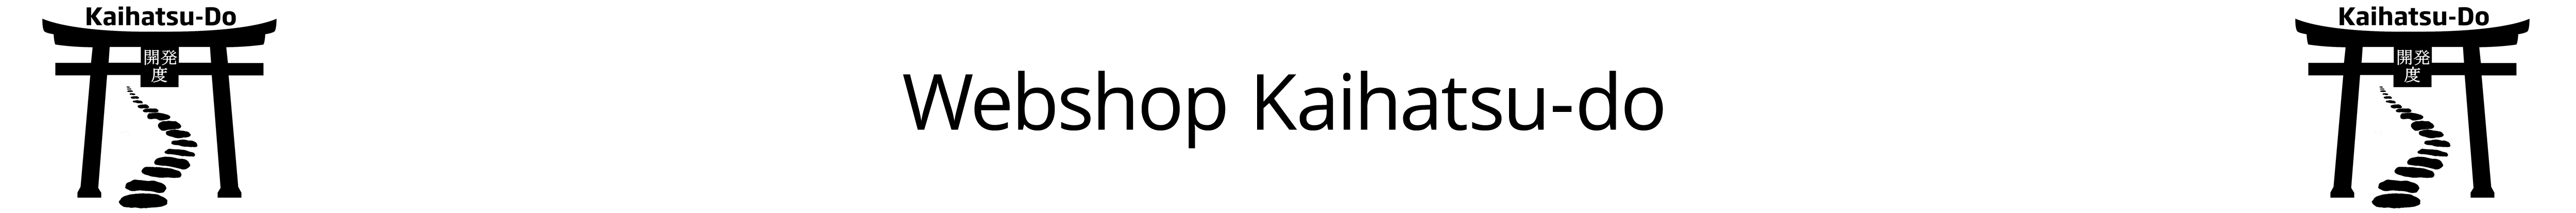 Kaihatsu-Do